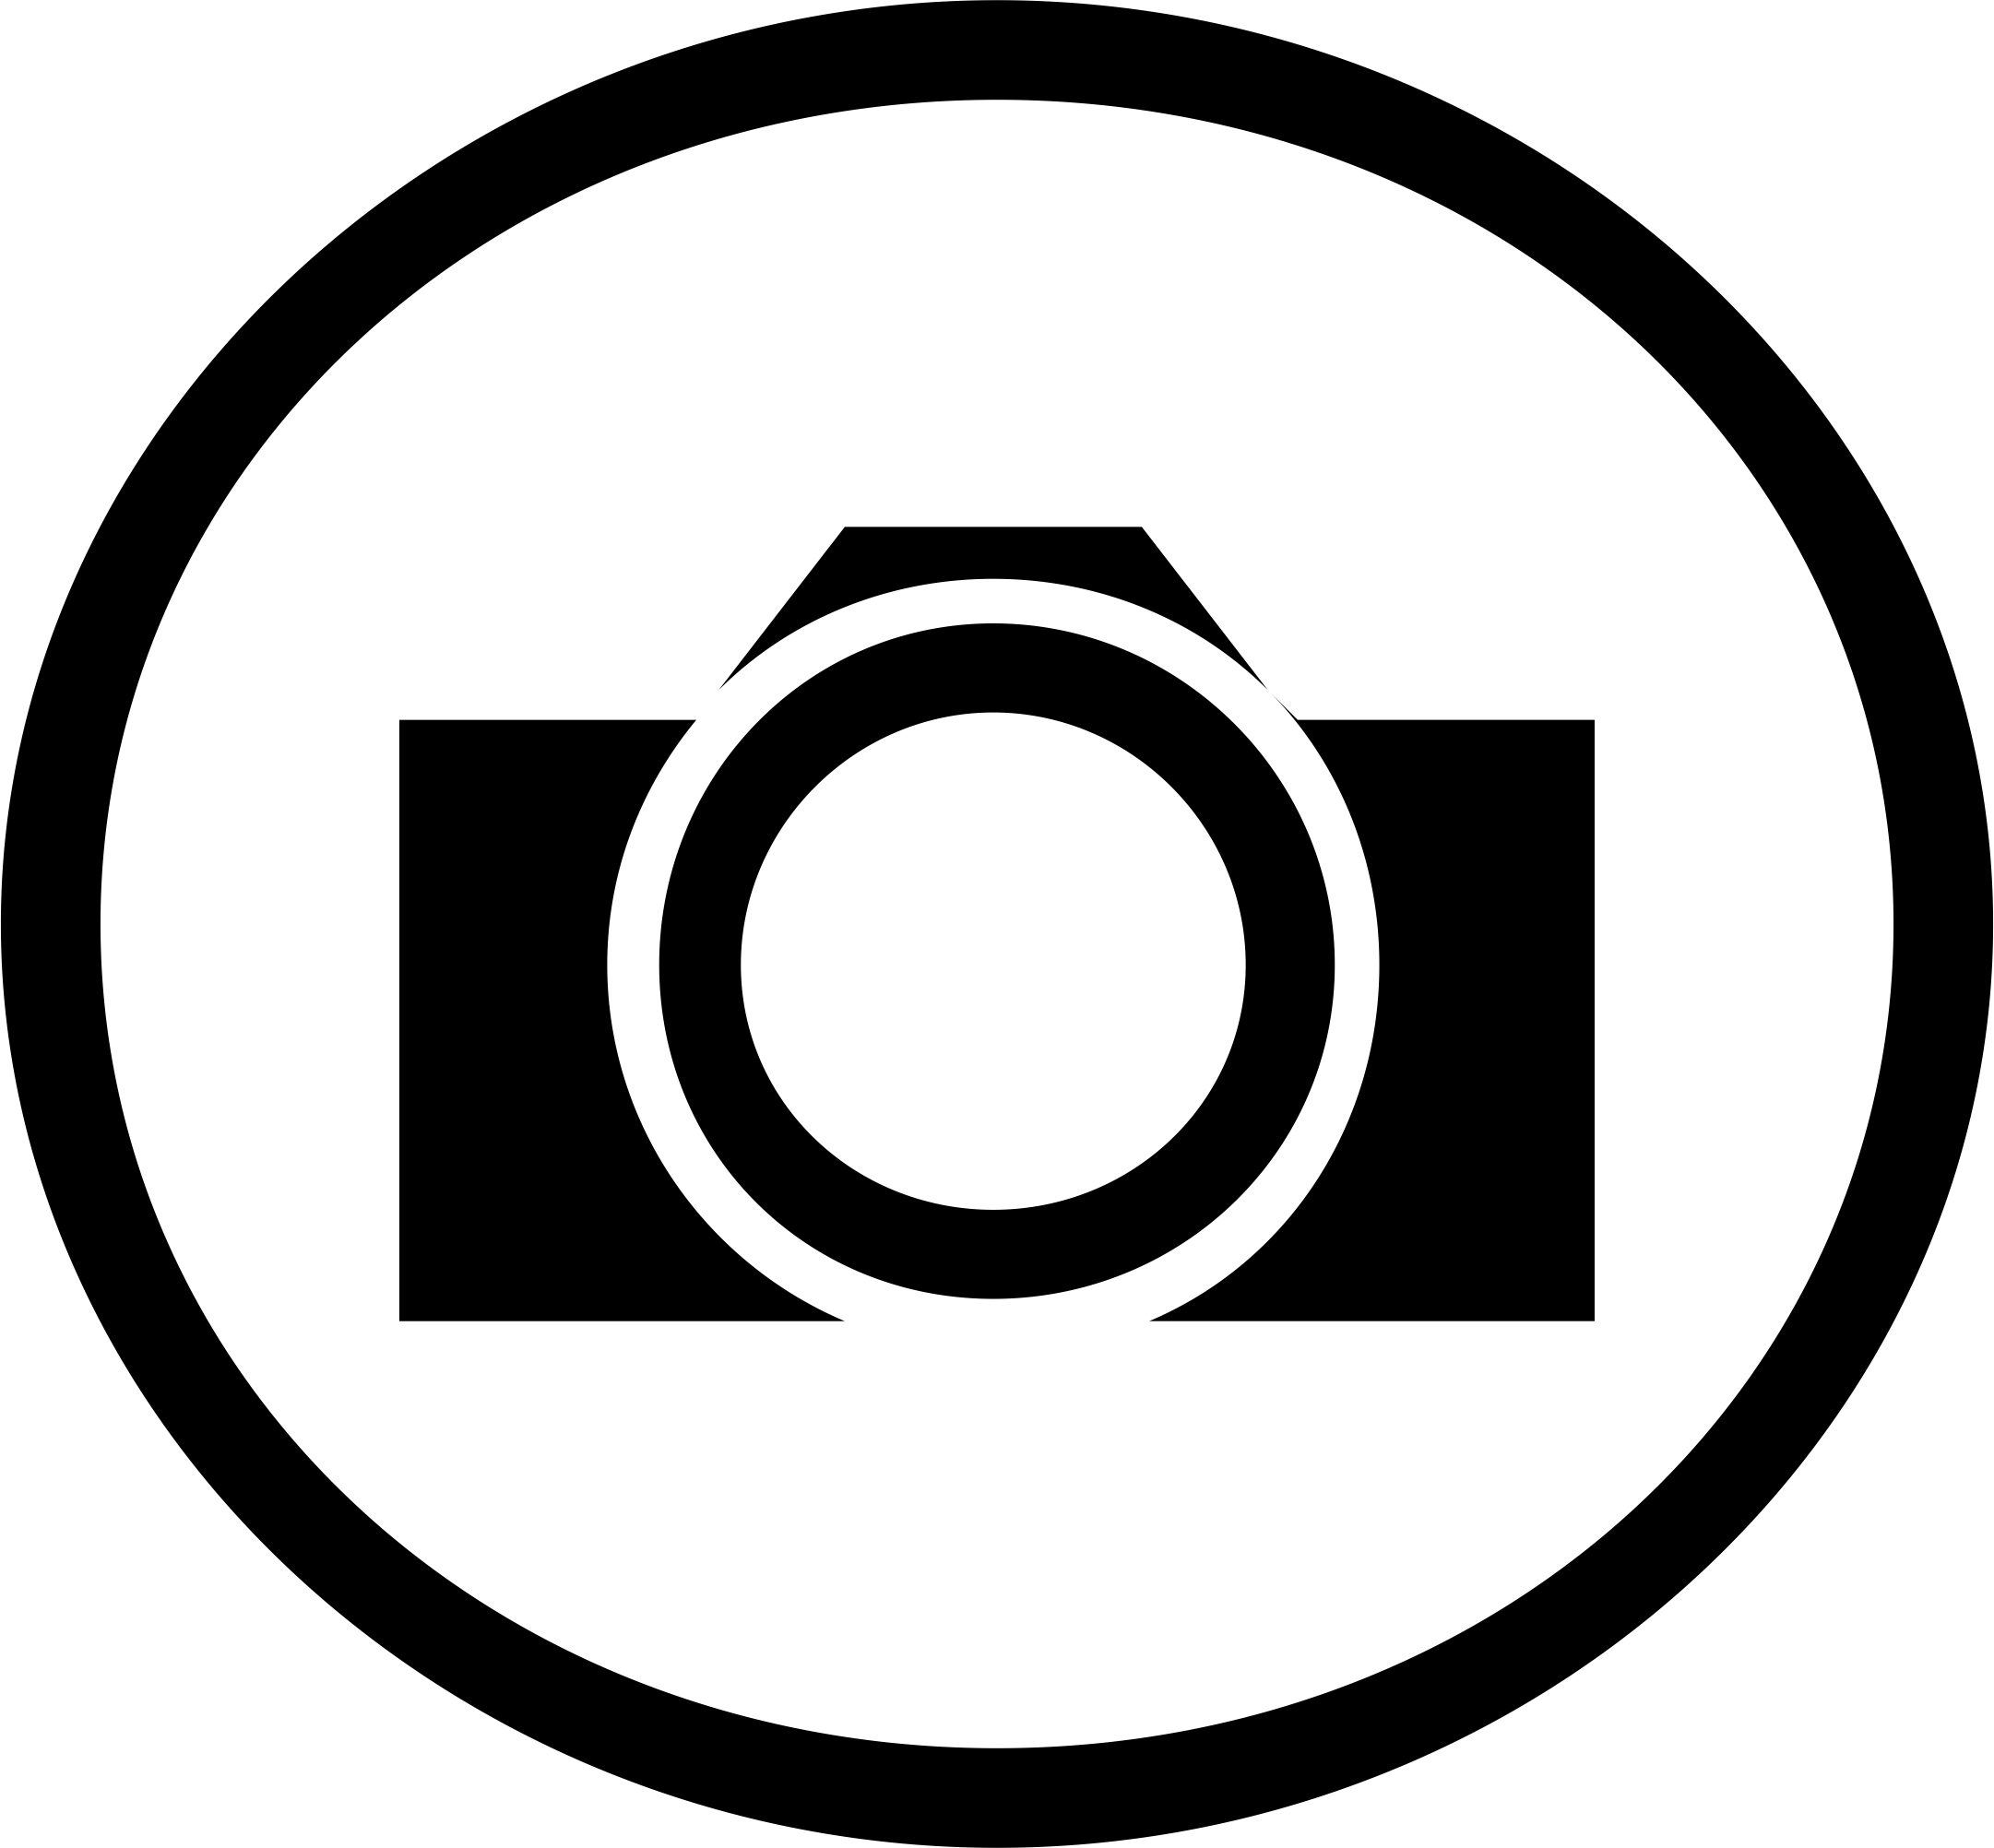 Black White Circle in Circle Logo - Png Camera Logo - Free Transparent PNG Logos